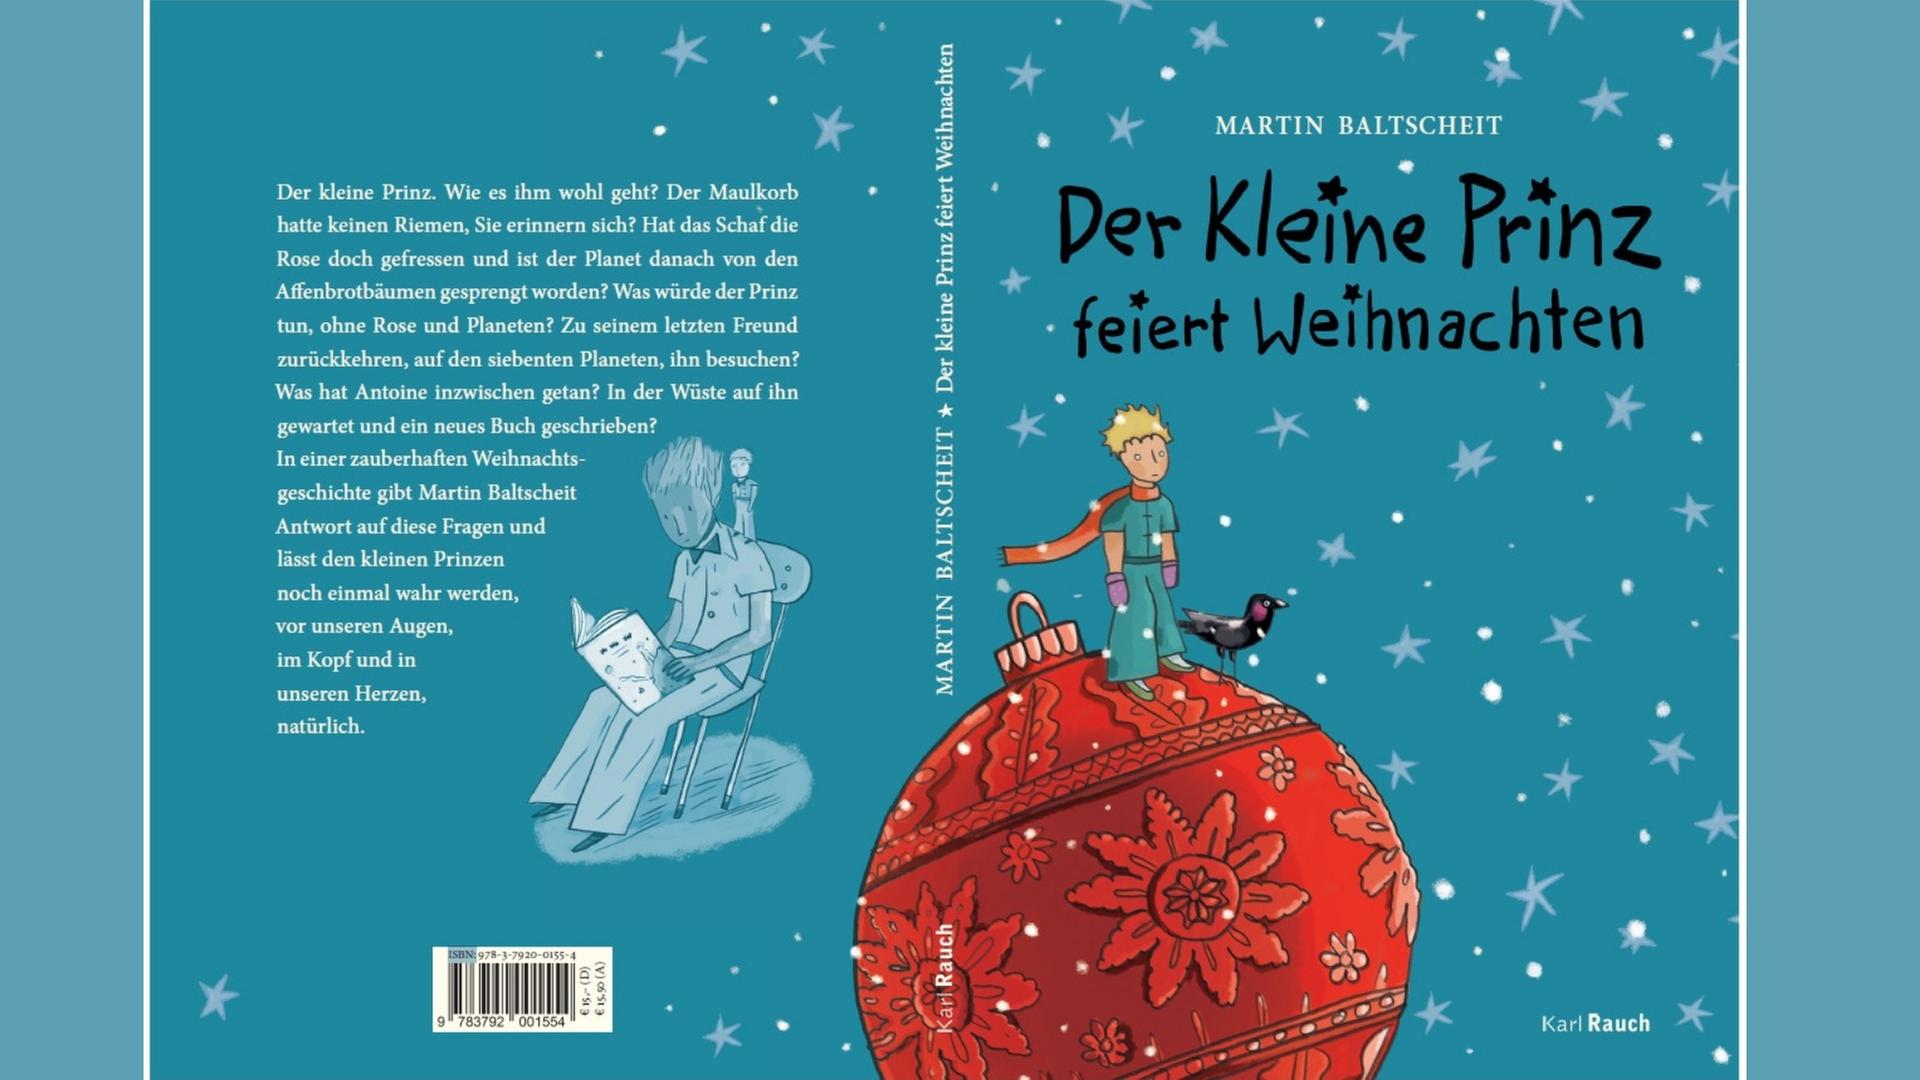 Buchcover: Martin Baltscheit: "Der kleine Prinz feiert Weihnachten"